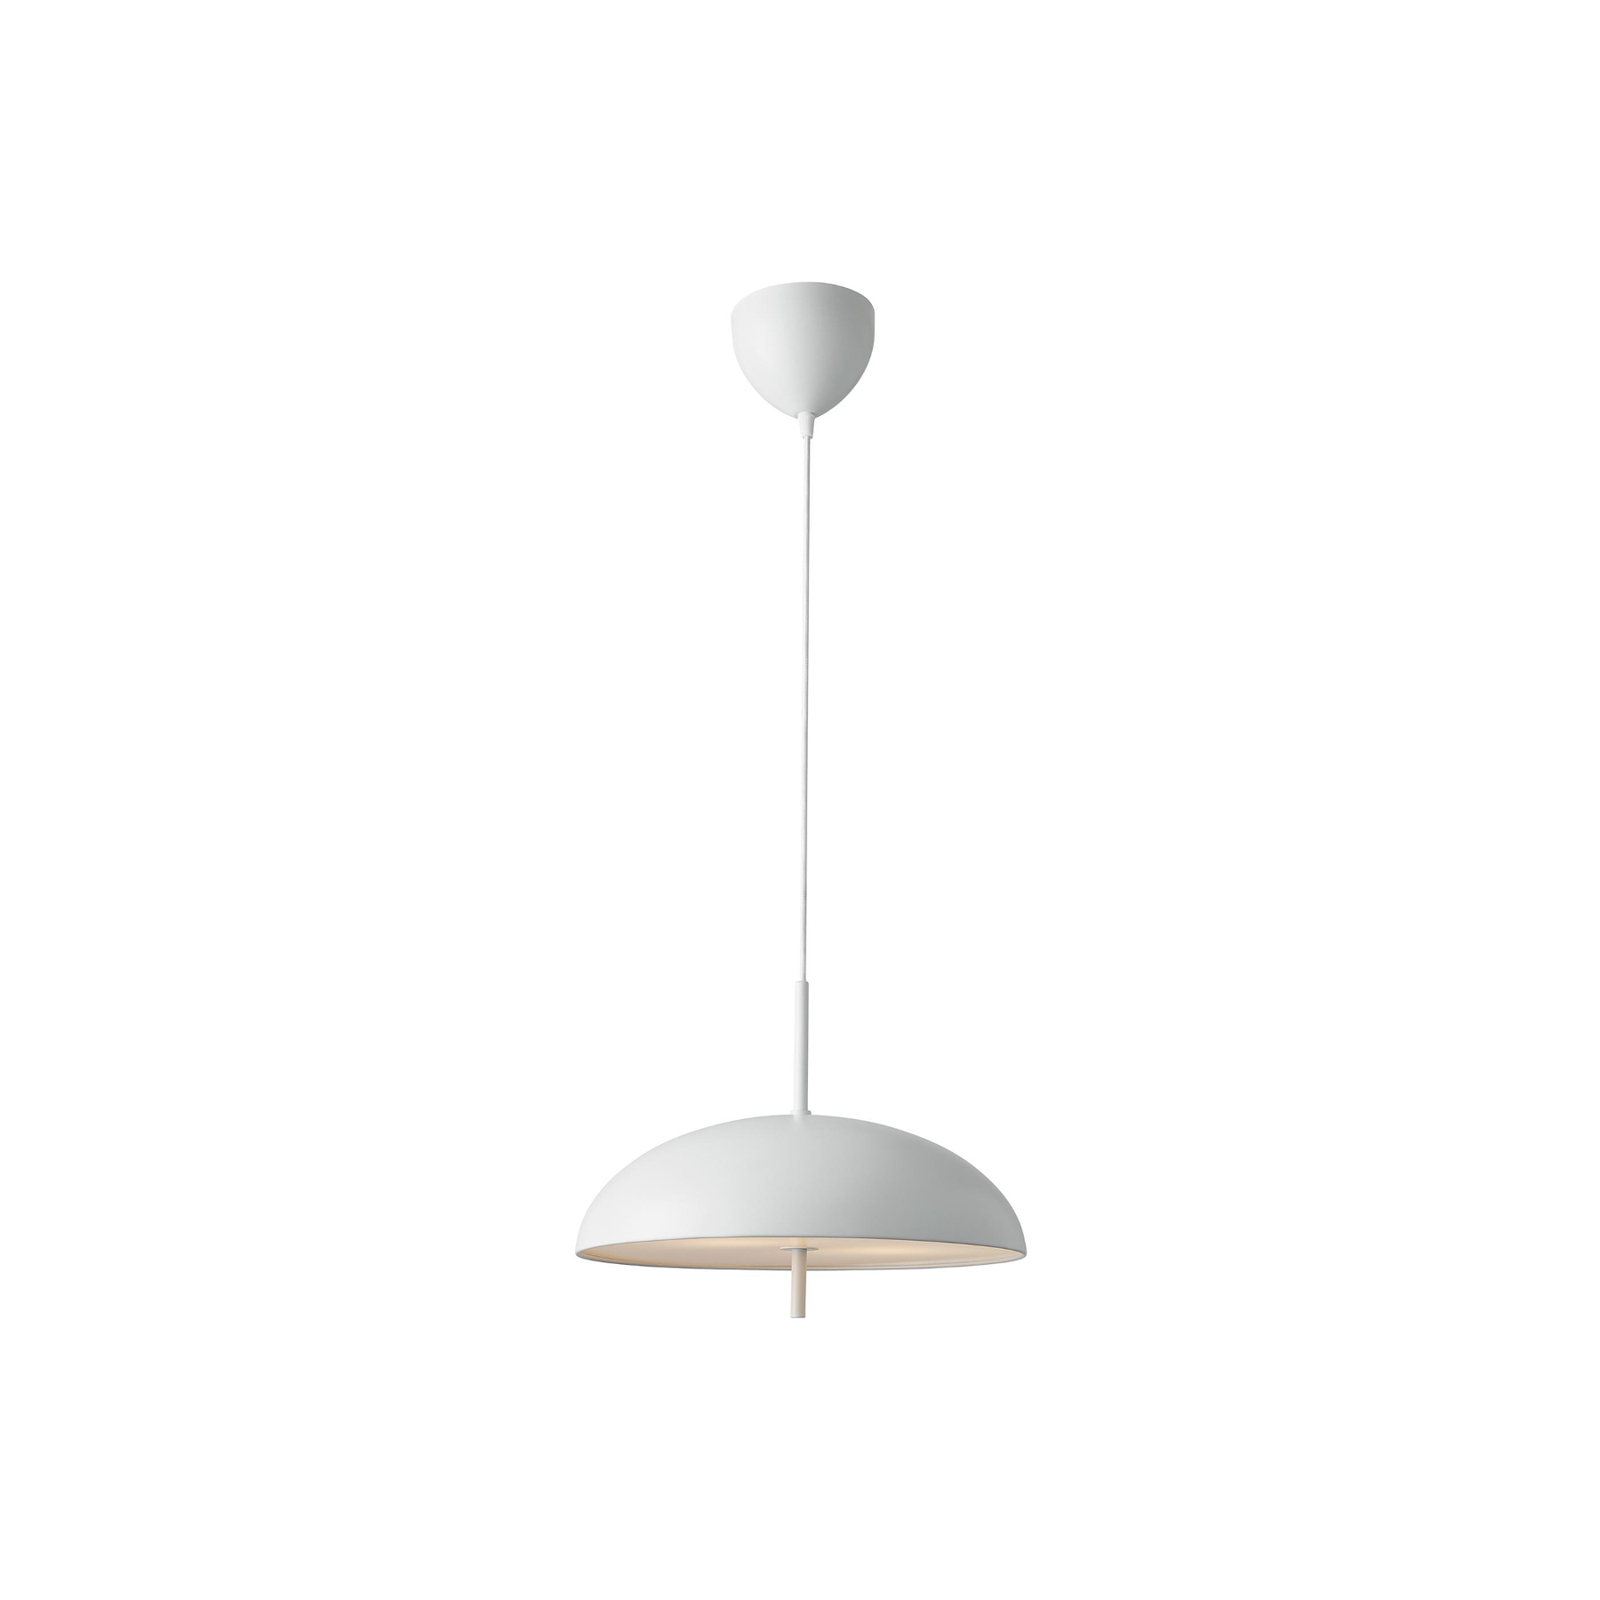 Versale hanglamp, wit, Ø 35 cm, metaal, 2 x E27